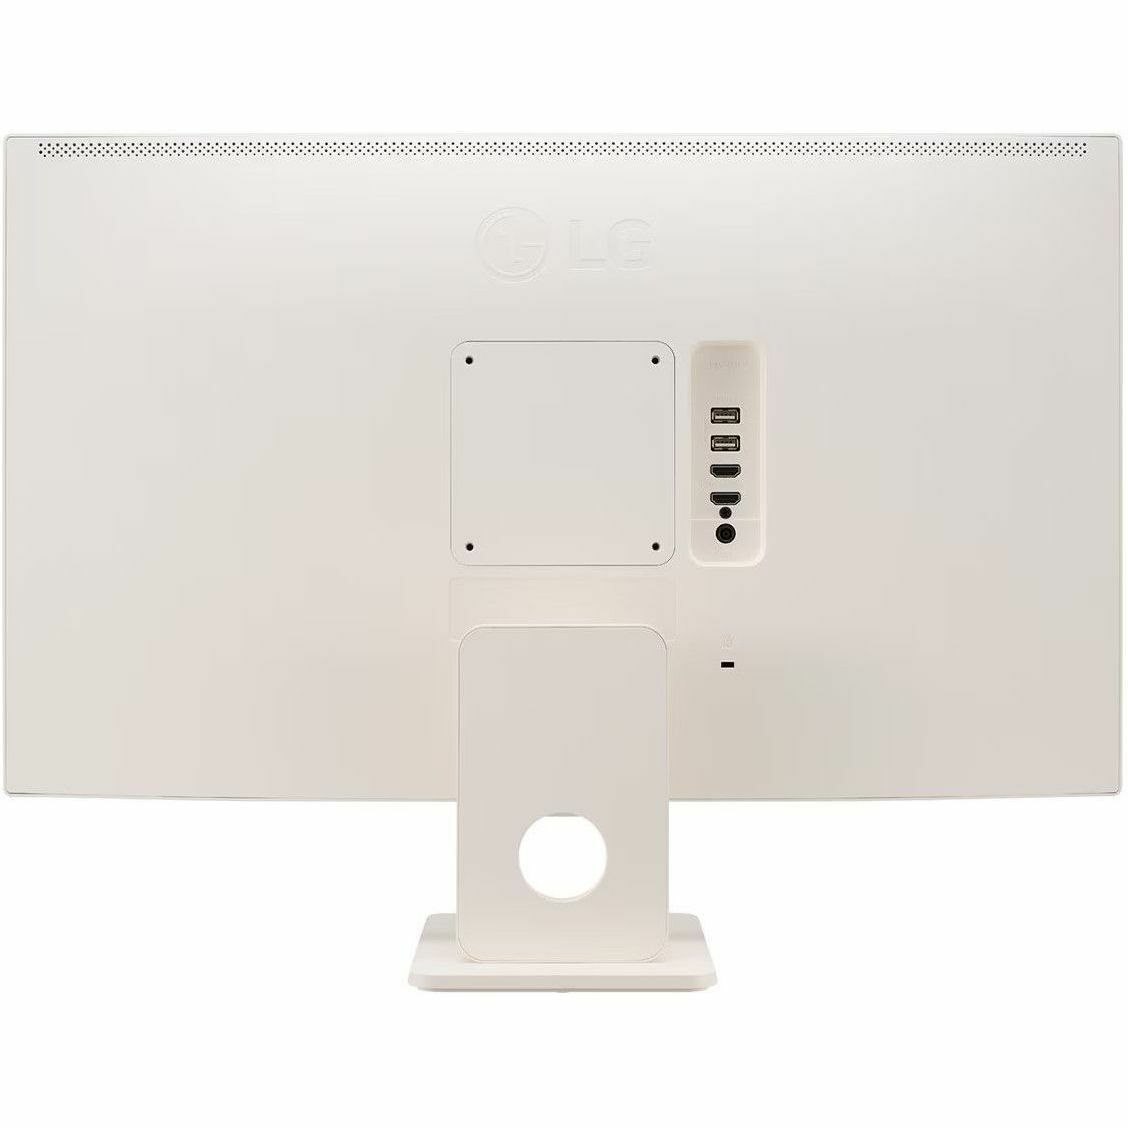 LG 27SR50F-W 27" Class Full HD Smart LCD Monitor - 16:9